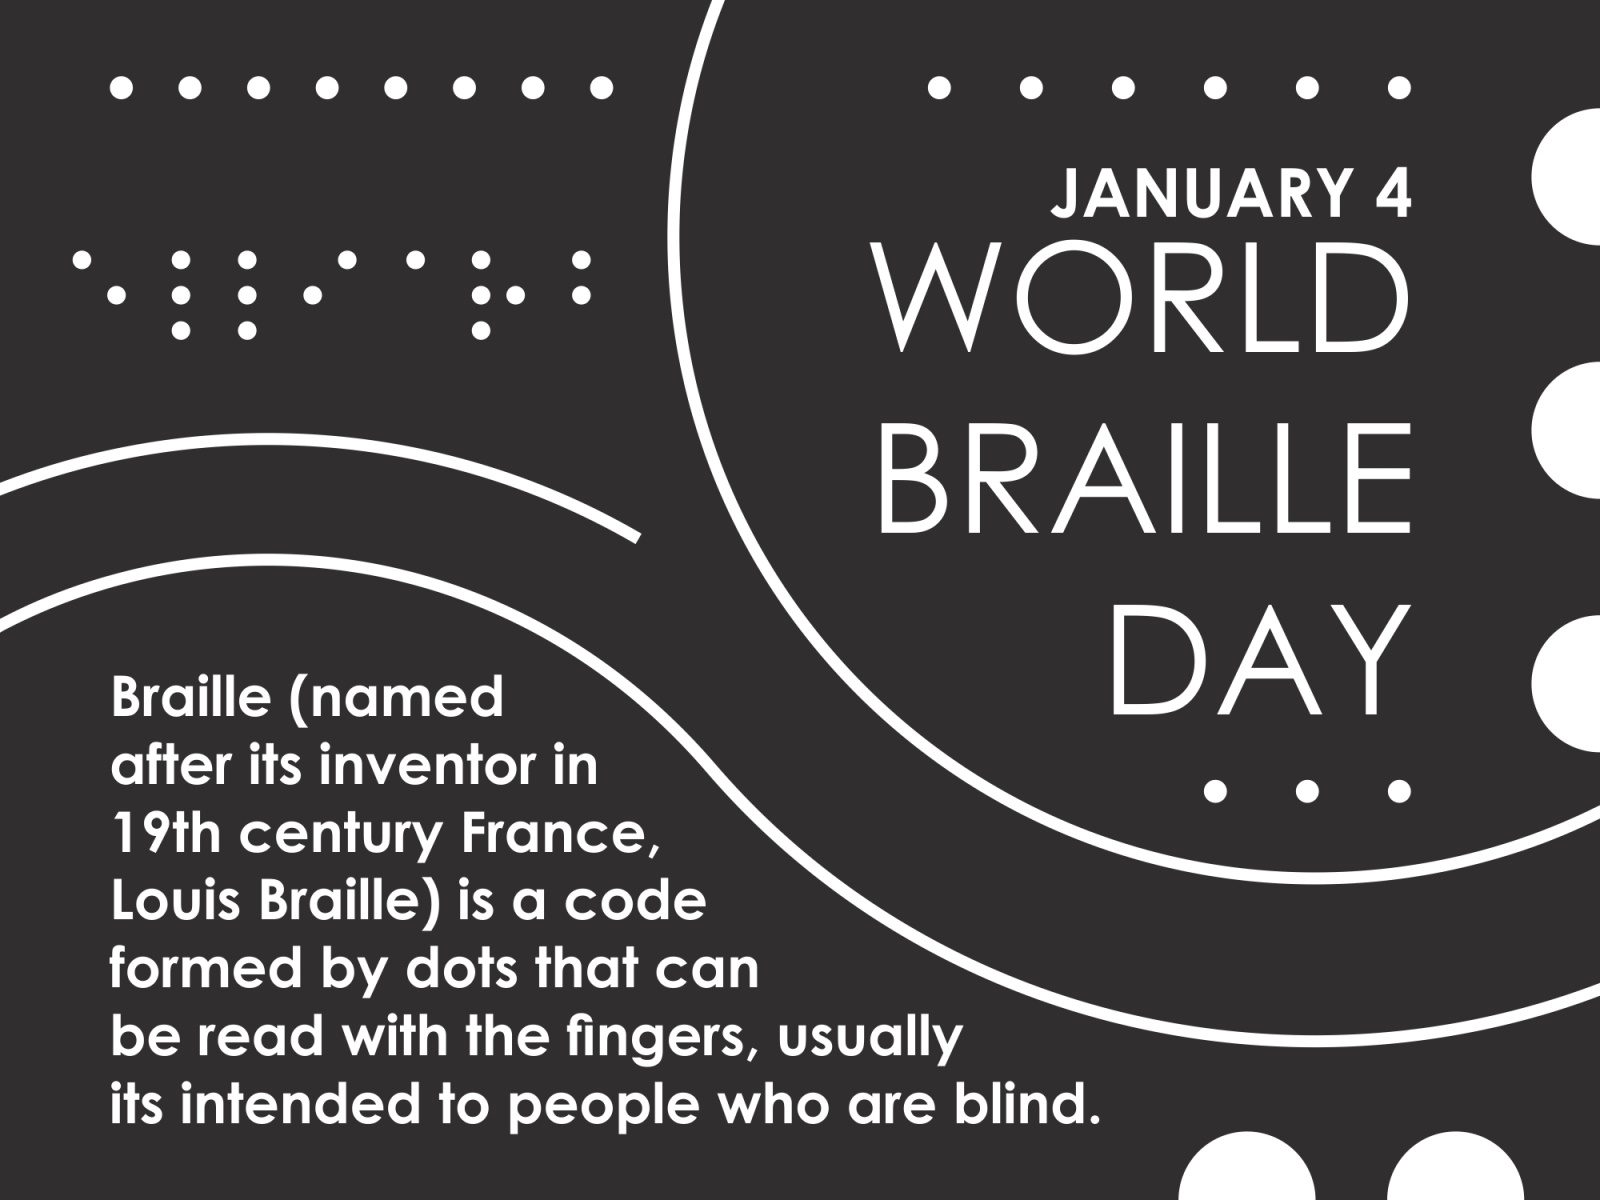 World Braille Day 2022